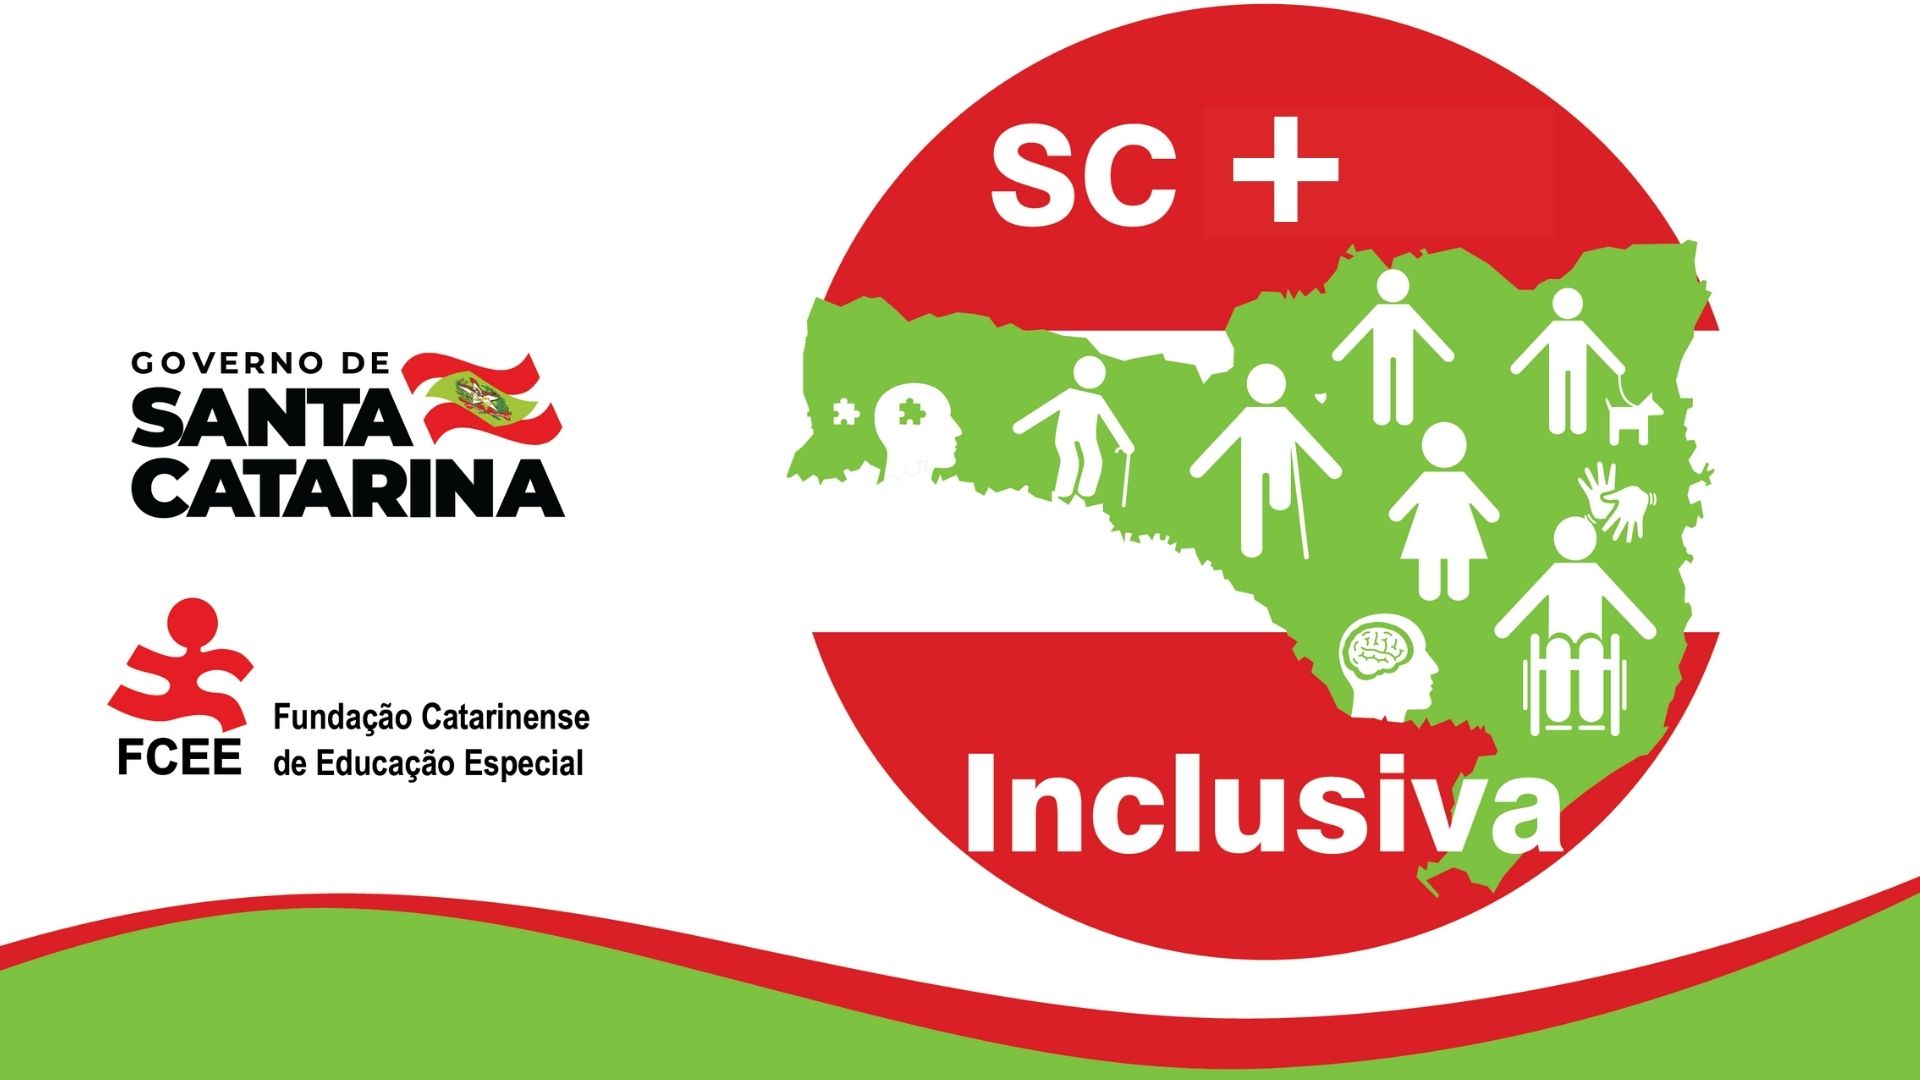 SC Mais Inclusiva logo